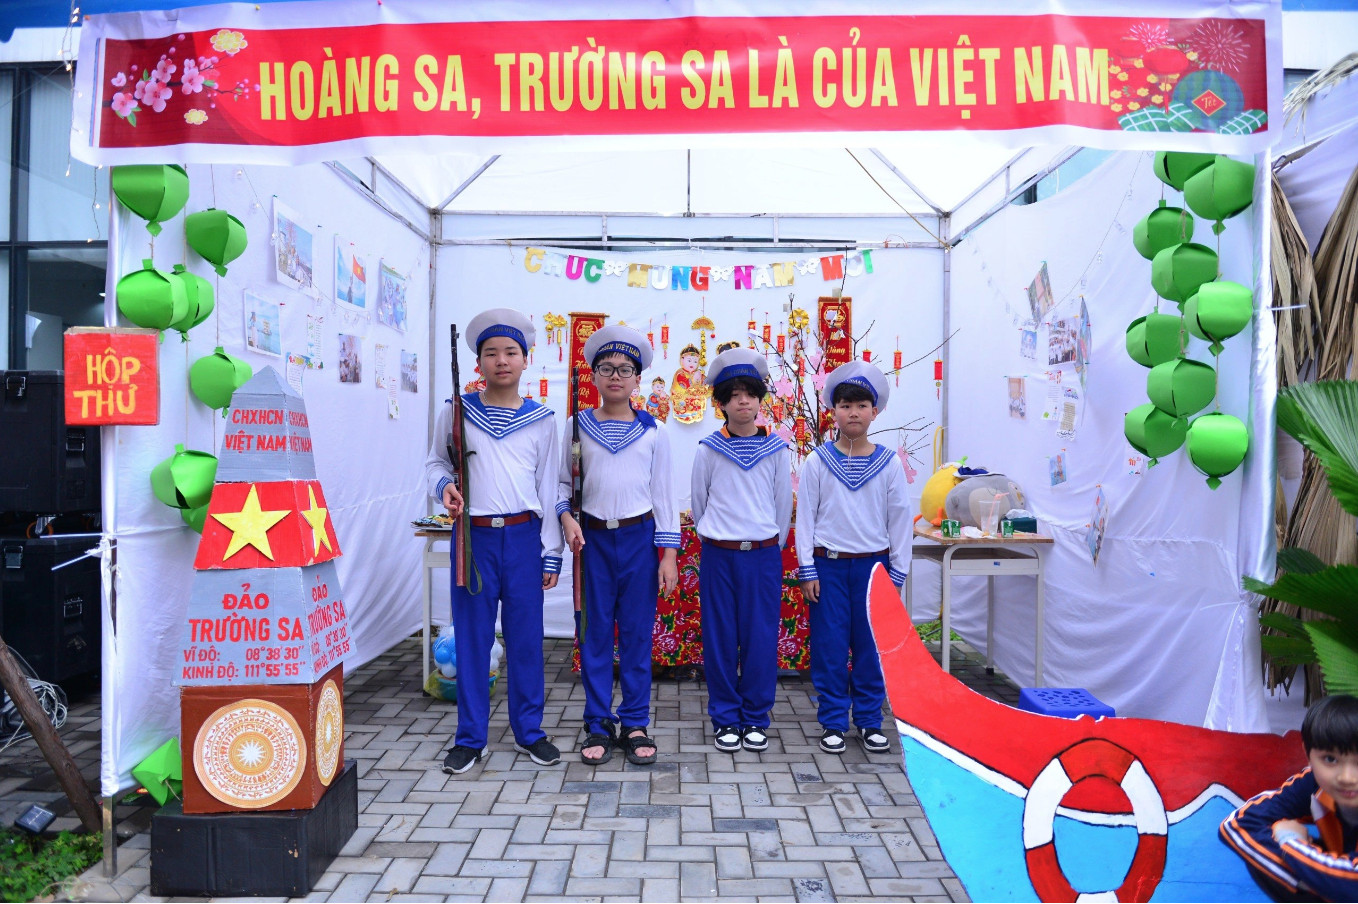 Hành trình văn hóa xuyên Việt là điểm nhấn hấp dẫn. Người tham dự lễ hội được đi qua các vùng đất, khám phá danh lam, thắng cảnh tuyệt đẹp của đất nước, ẩm thực đặc trưng vùng miền thông qua các gian trại do chính học sinh, phụ huynh xây dựng chủ đề và thiết kế sáng tạo.